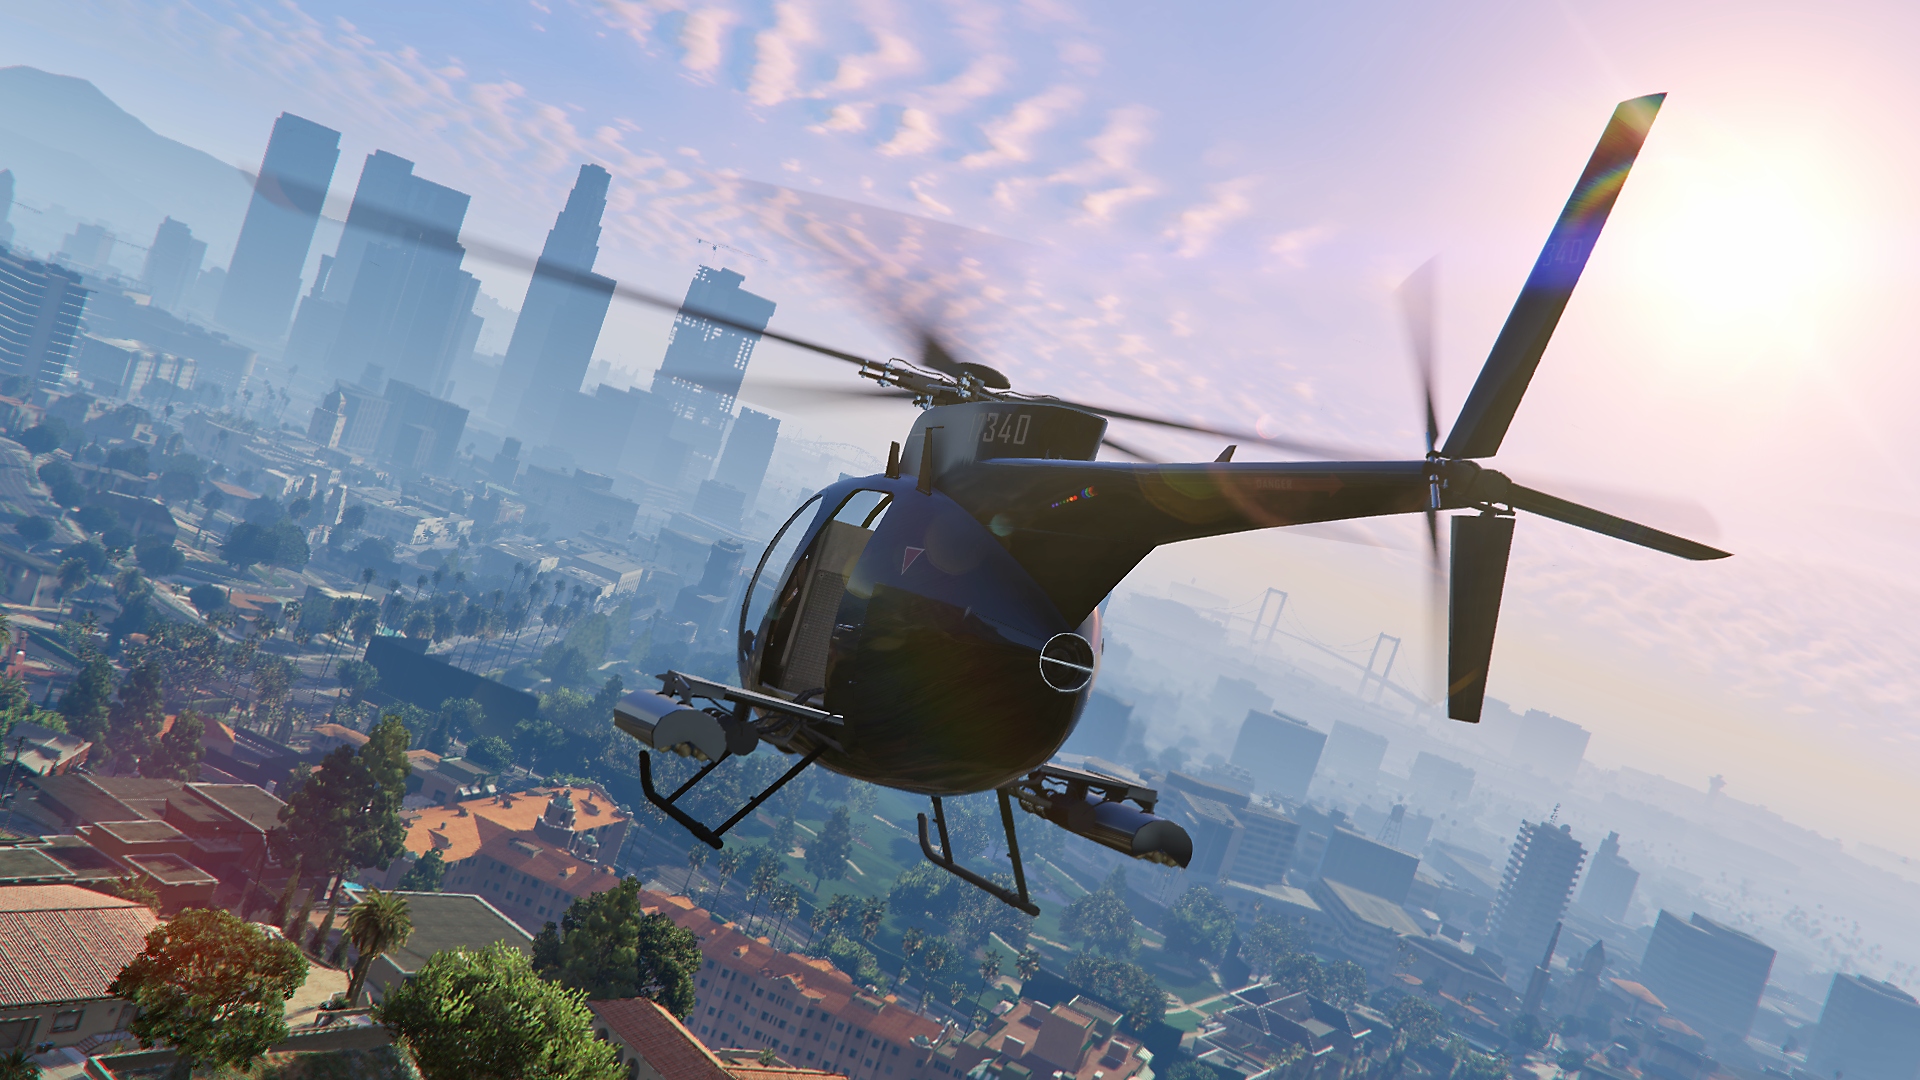 ภาพหน้าจอ Grand Theft Auto V แสดงให้เห็นเฮลิคอปเตอร์บินโดยมีเส้นขอบฟ้าของเมืองอยู่ในระยะไกล